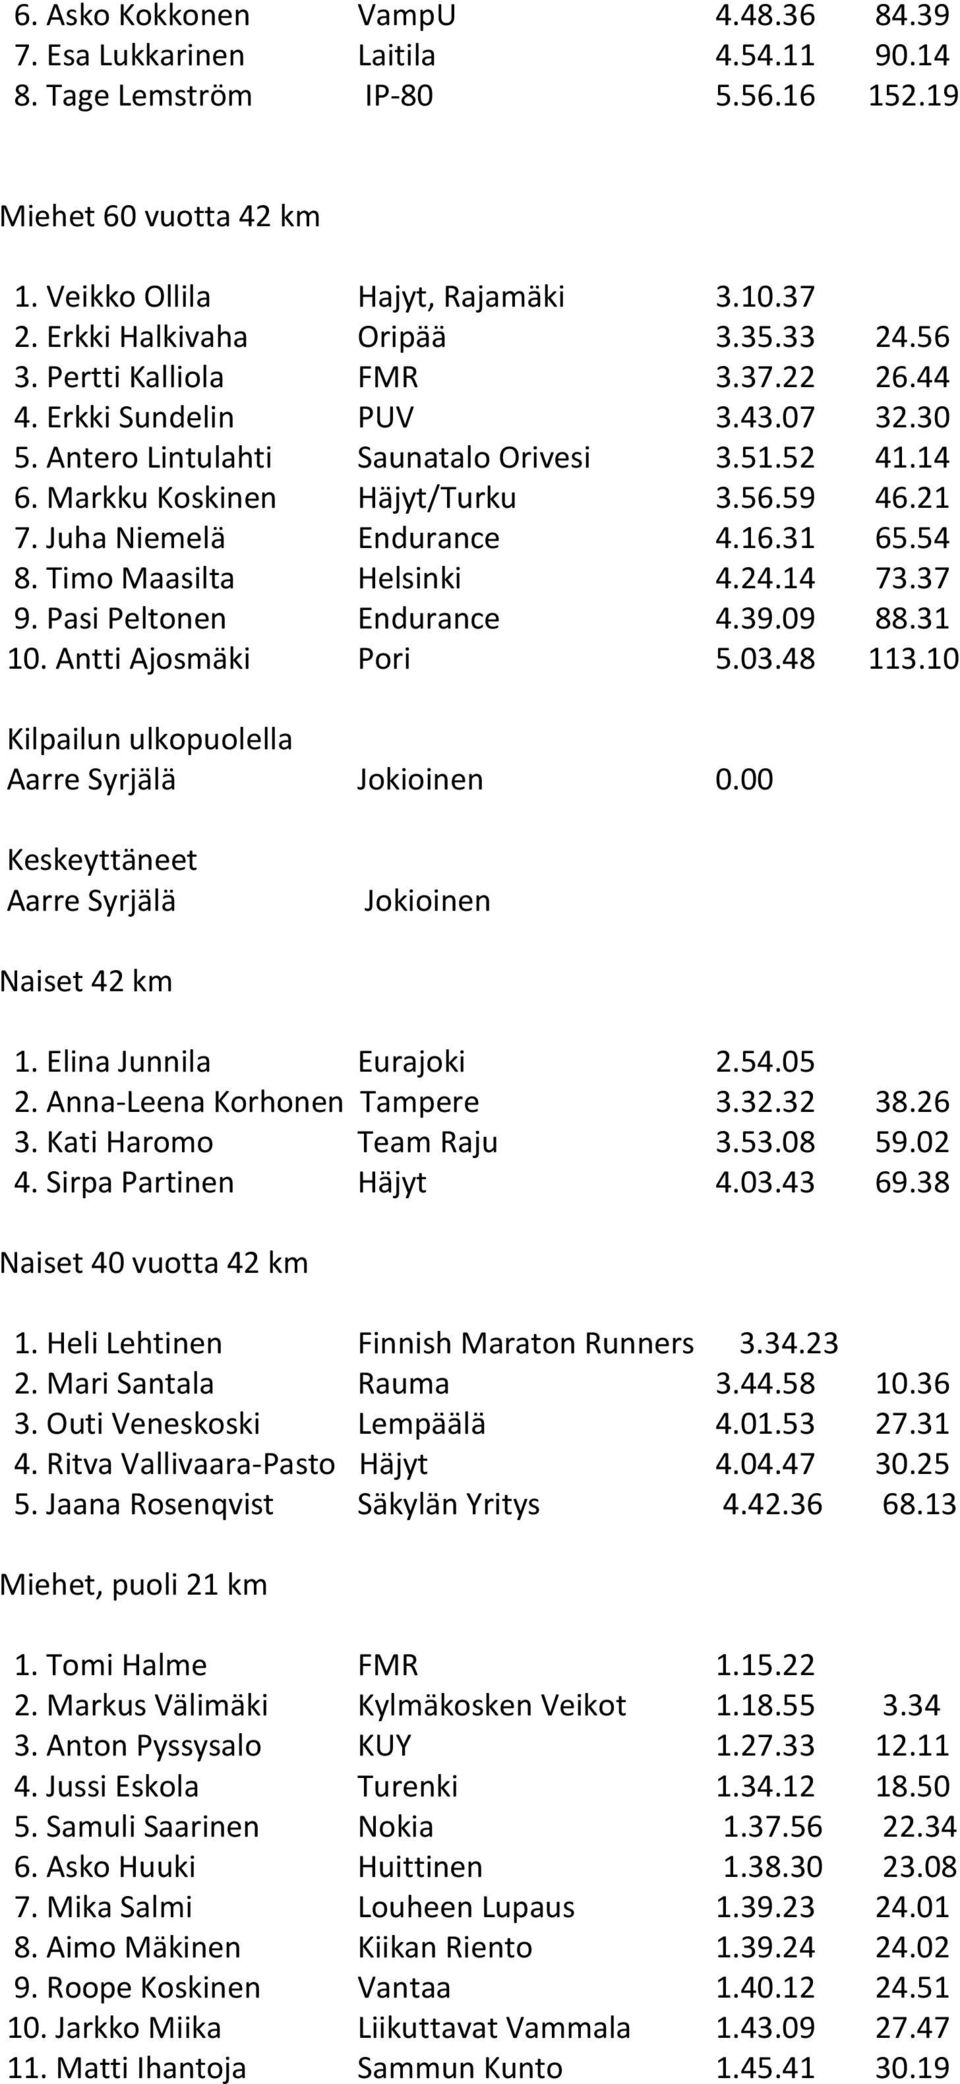 21 7. Juha Niemelä Endurance 4.16.31 65.54 8. Timo Maasilta Helsinki 4.24.14 73.37 9. Pasi Peltonen Endurance 4.39.09 88.31 10. Antti Ajosmäki Pori 5.03.48 113.